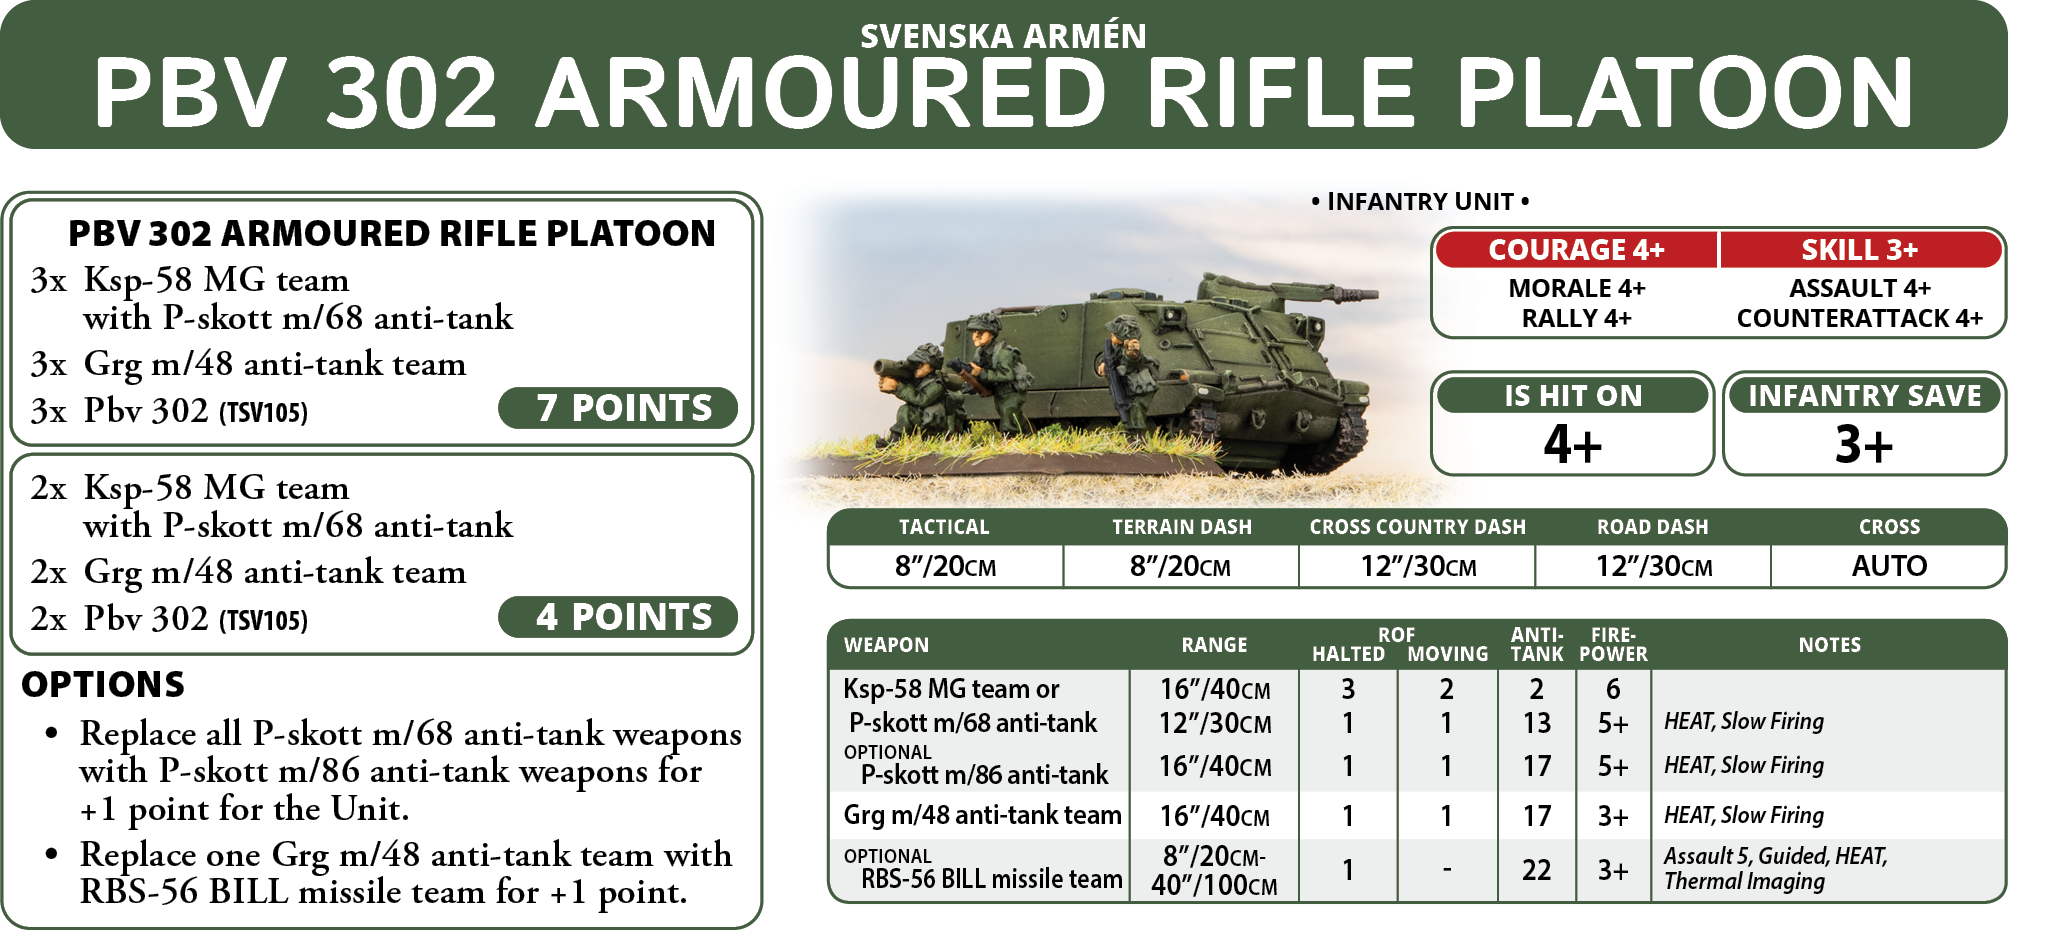 PBV 302 Armoured Rifle Platoon